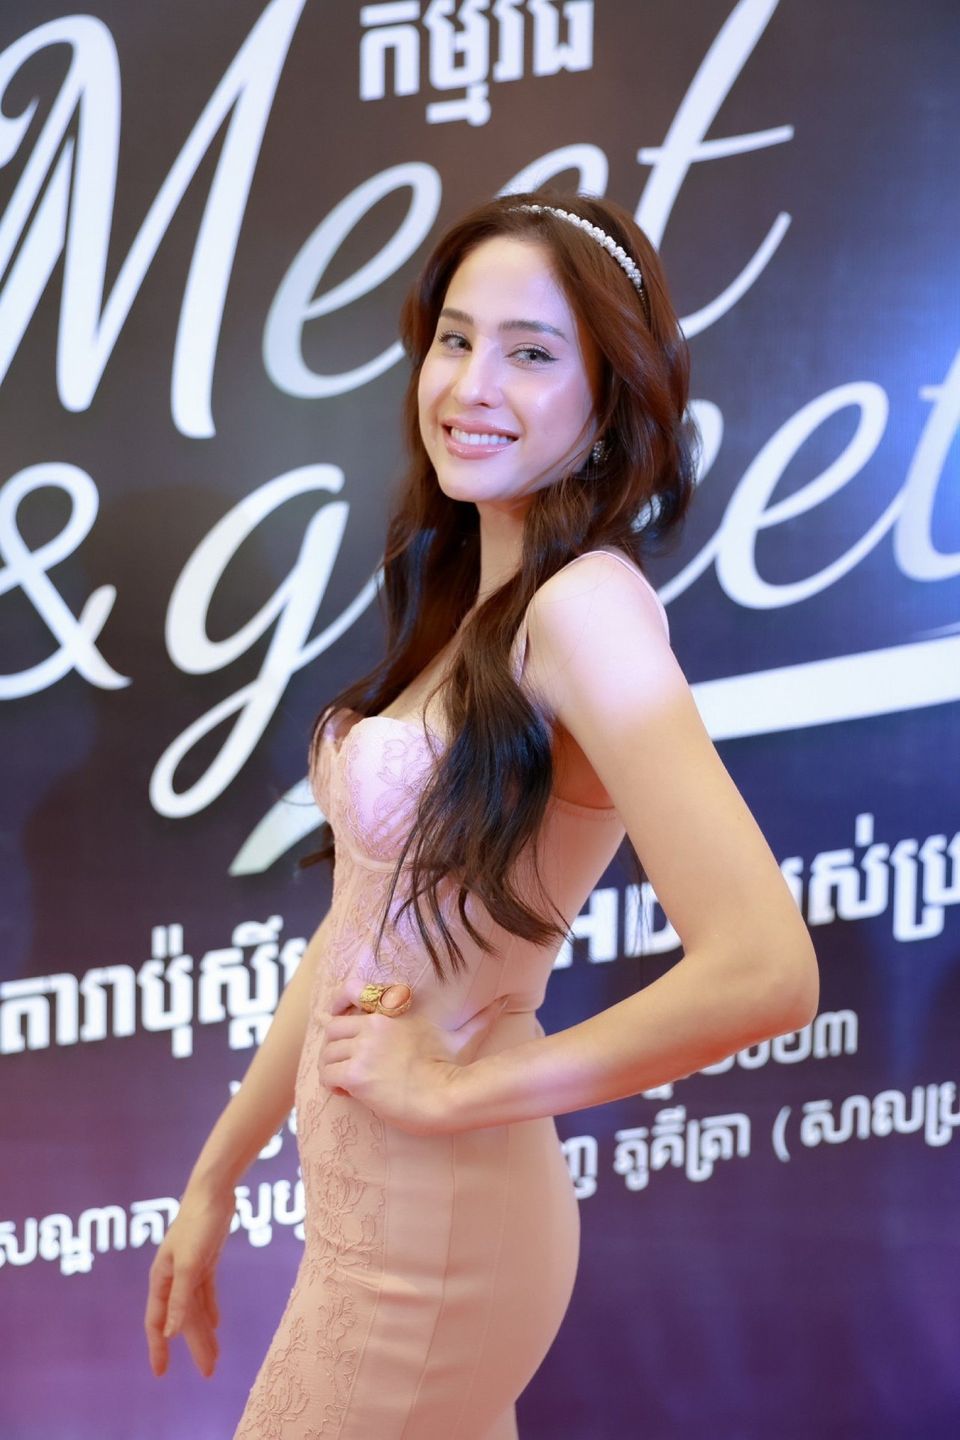 แฟนกัมพูชาแฮปปี้ “ไมค์-ขวัญ-ฐิสา-จิณณ์” จัดเต็ม Let’s meet with #Ch7HDStars in Cambodia สุดปัง